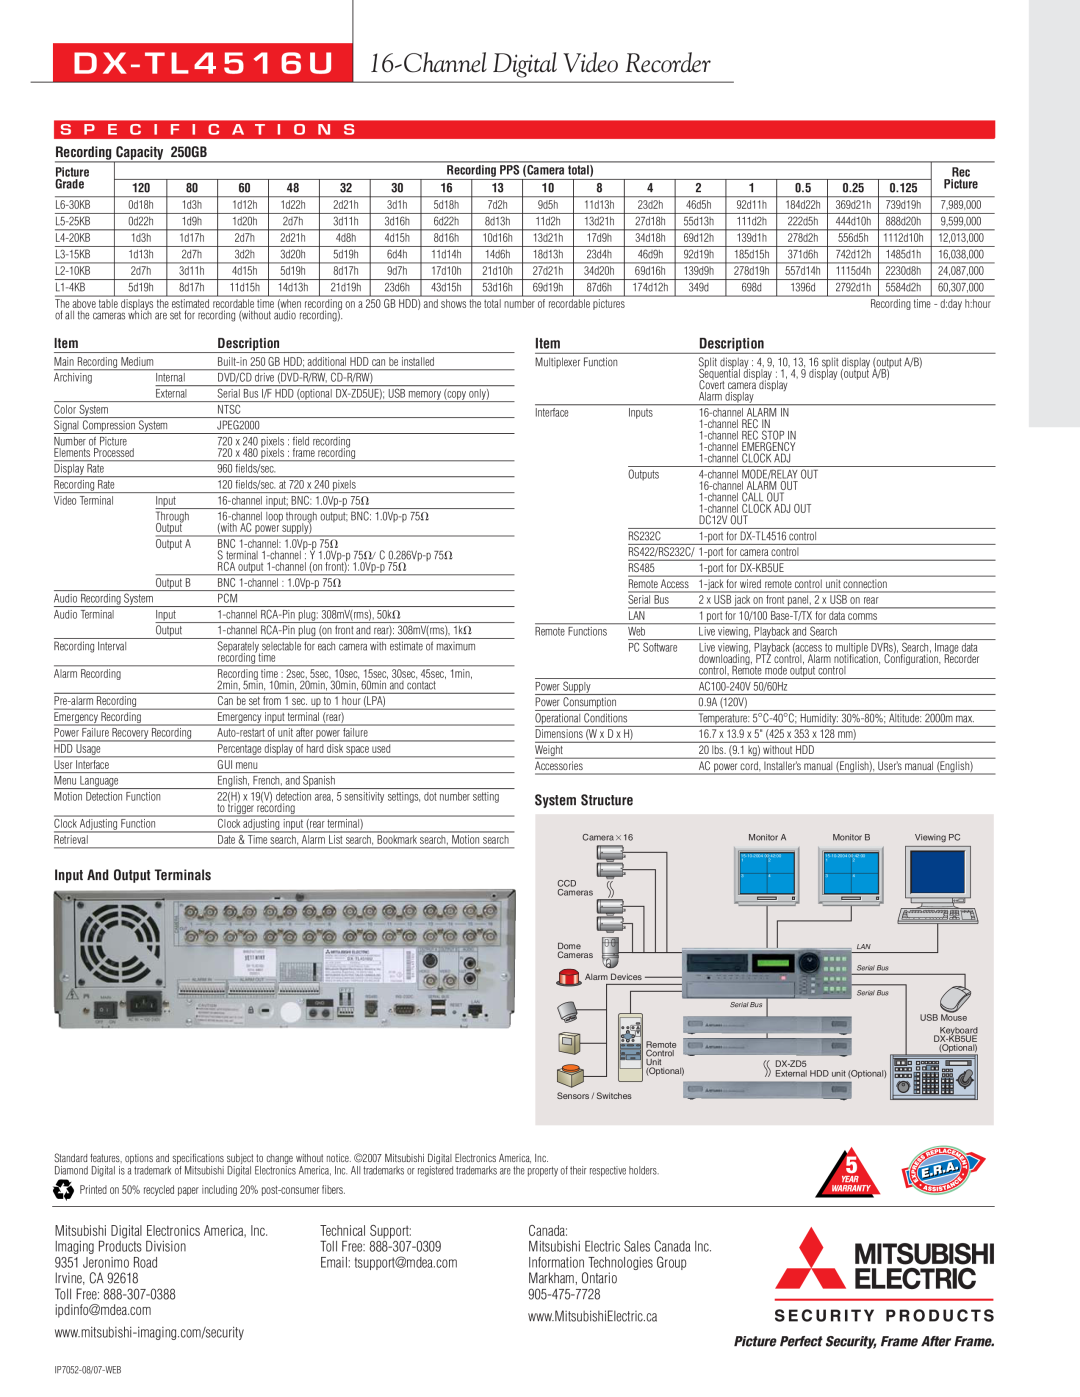 Mitsumi electronic DX-TL4516U D X - T L 4 5 1 6 U, Channel Digital Video Recorder, S P E C I F I C A T I O N S, 250GB 